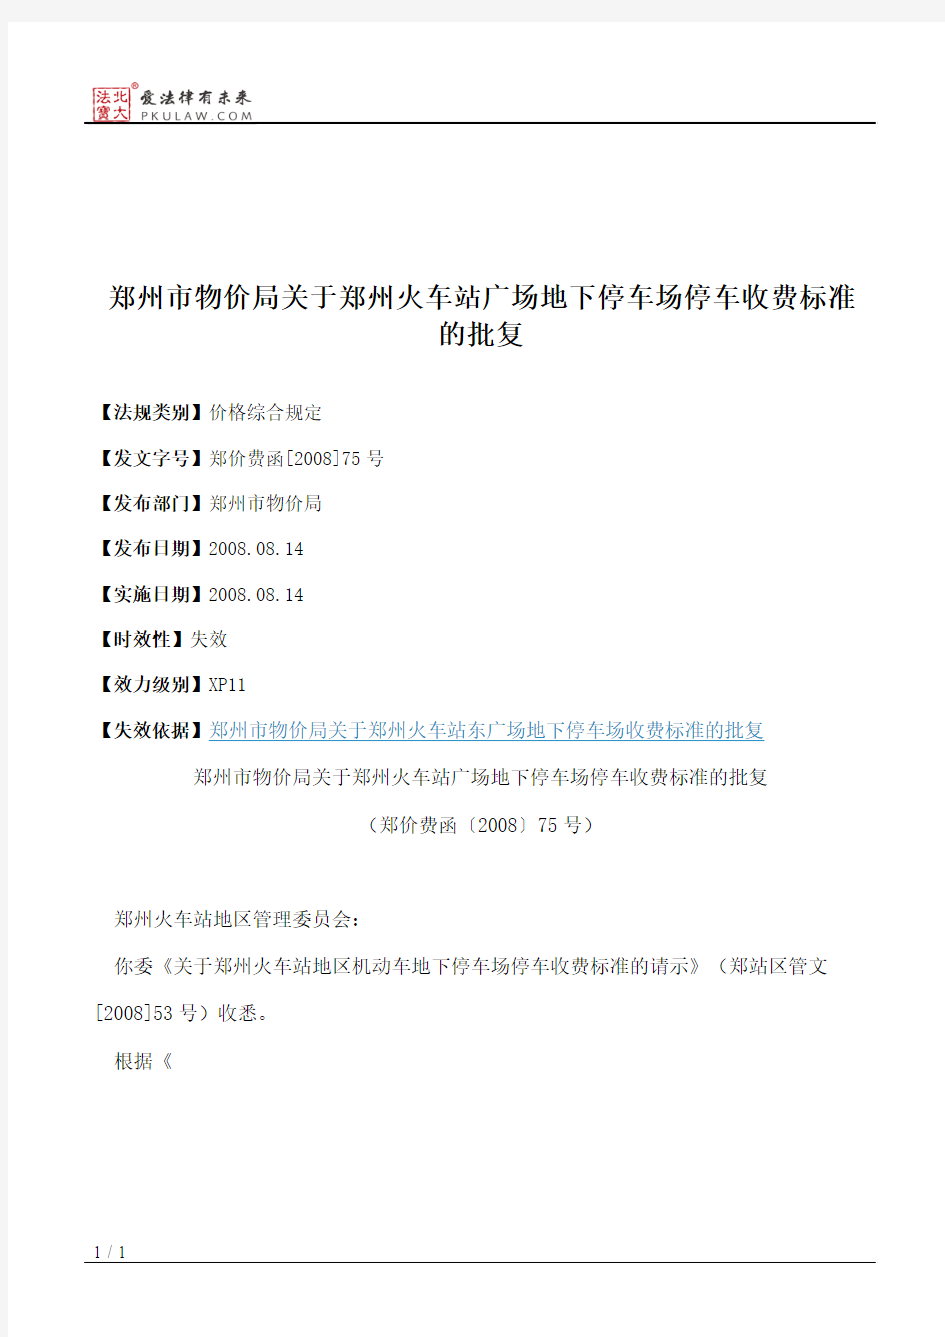 郑州市物价局关于郑州火车站广场地下停车场停车收费标准的批复